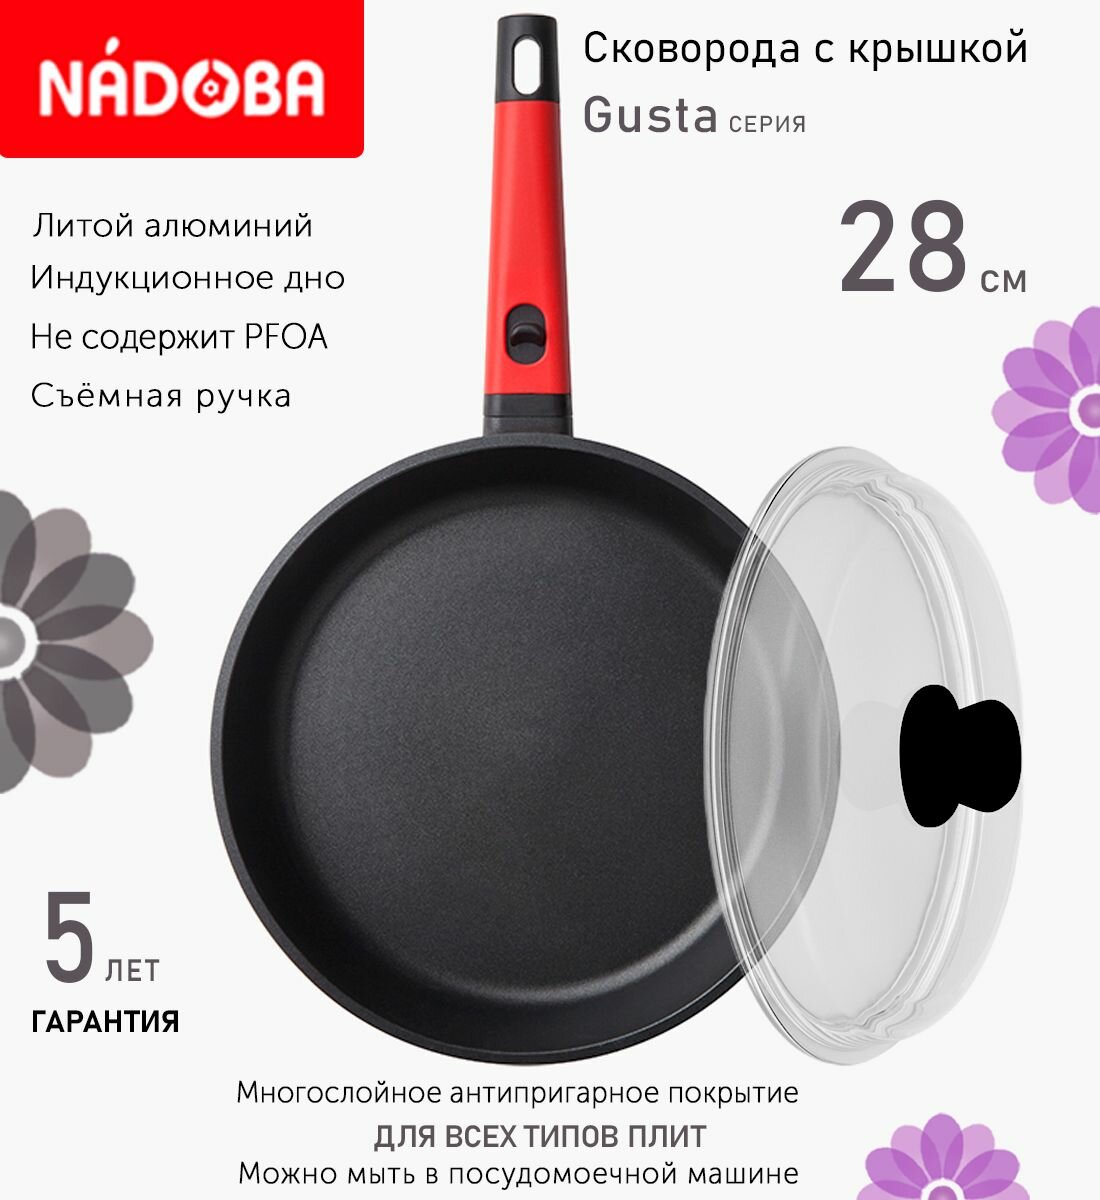 Сковорода с крышкой NADOBA 28см, серия "Gusta" (арт. 729216/751111)